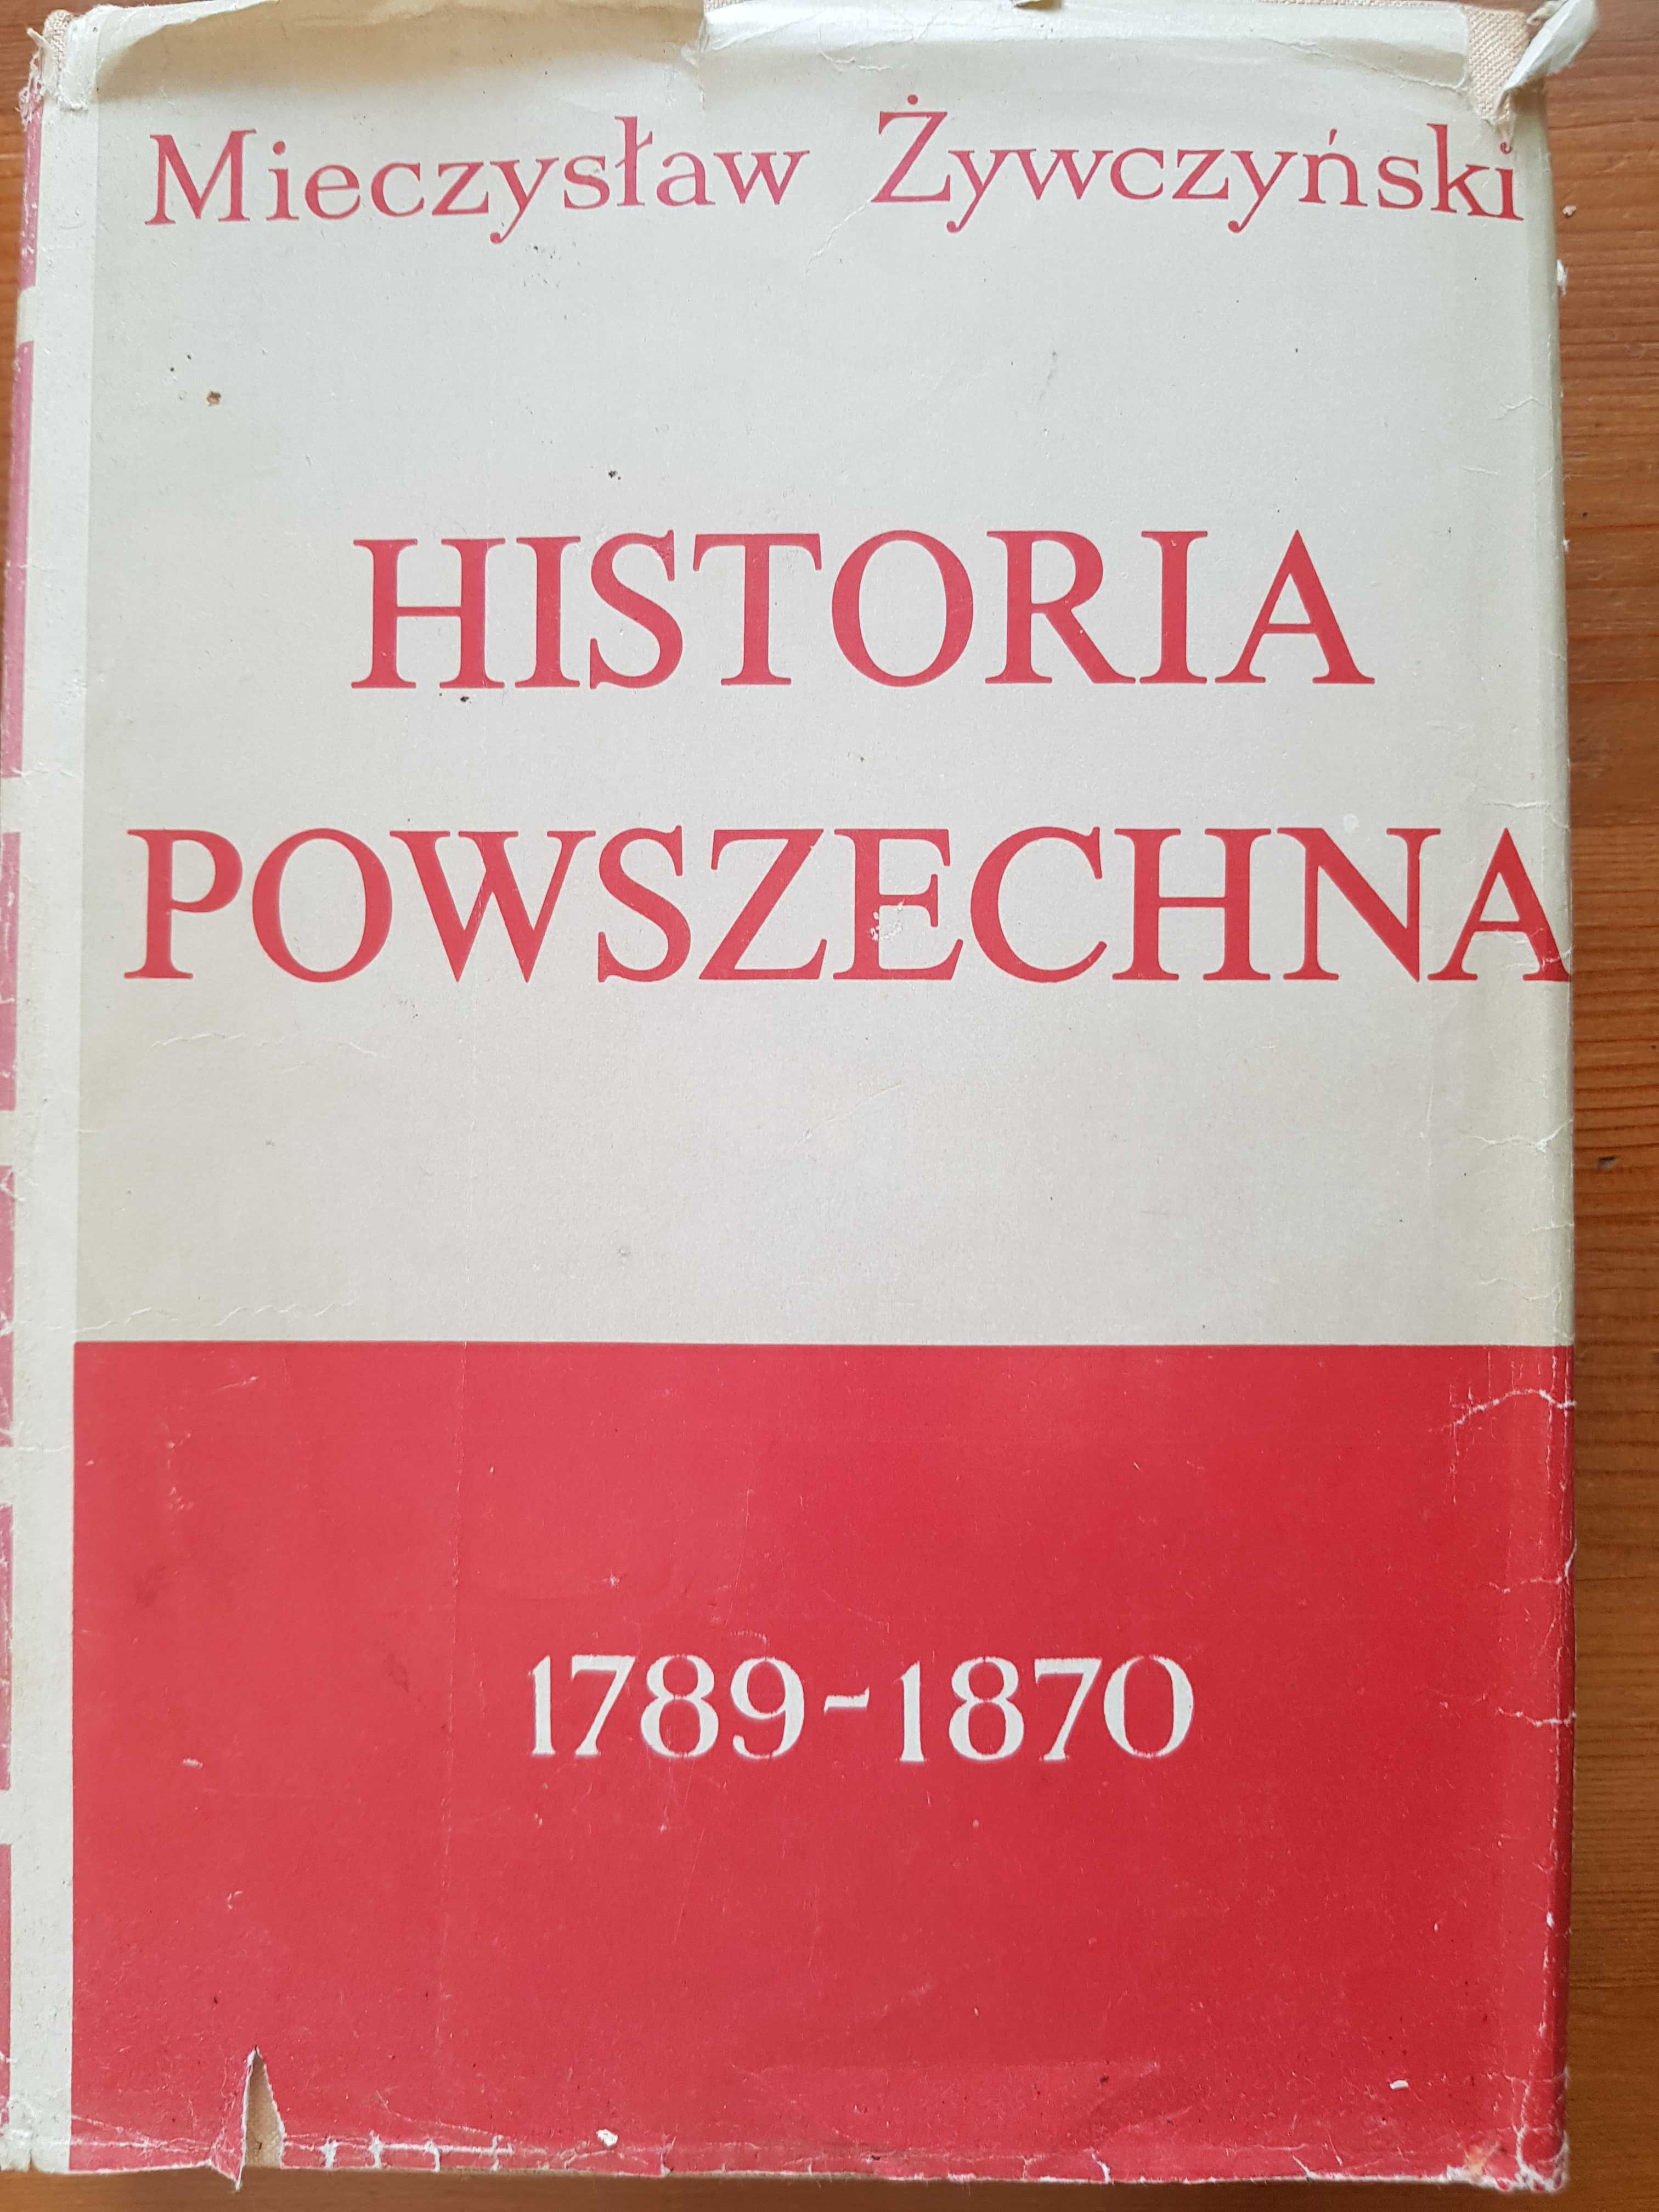 Historia powszechna 1789 - 1870; M. Żywczyński